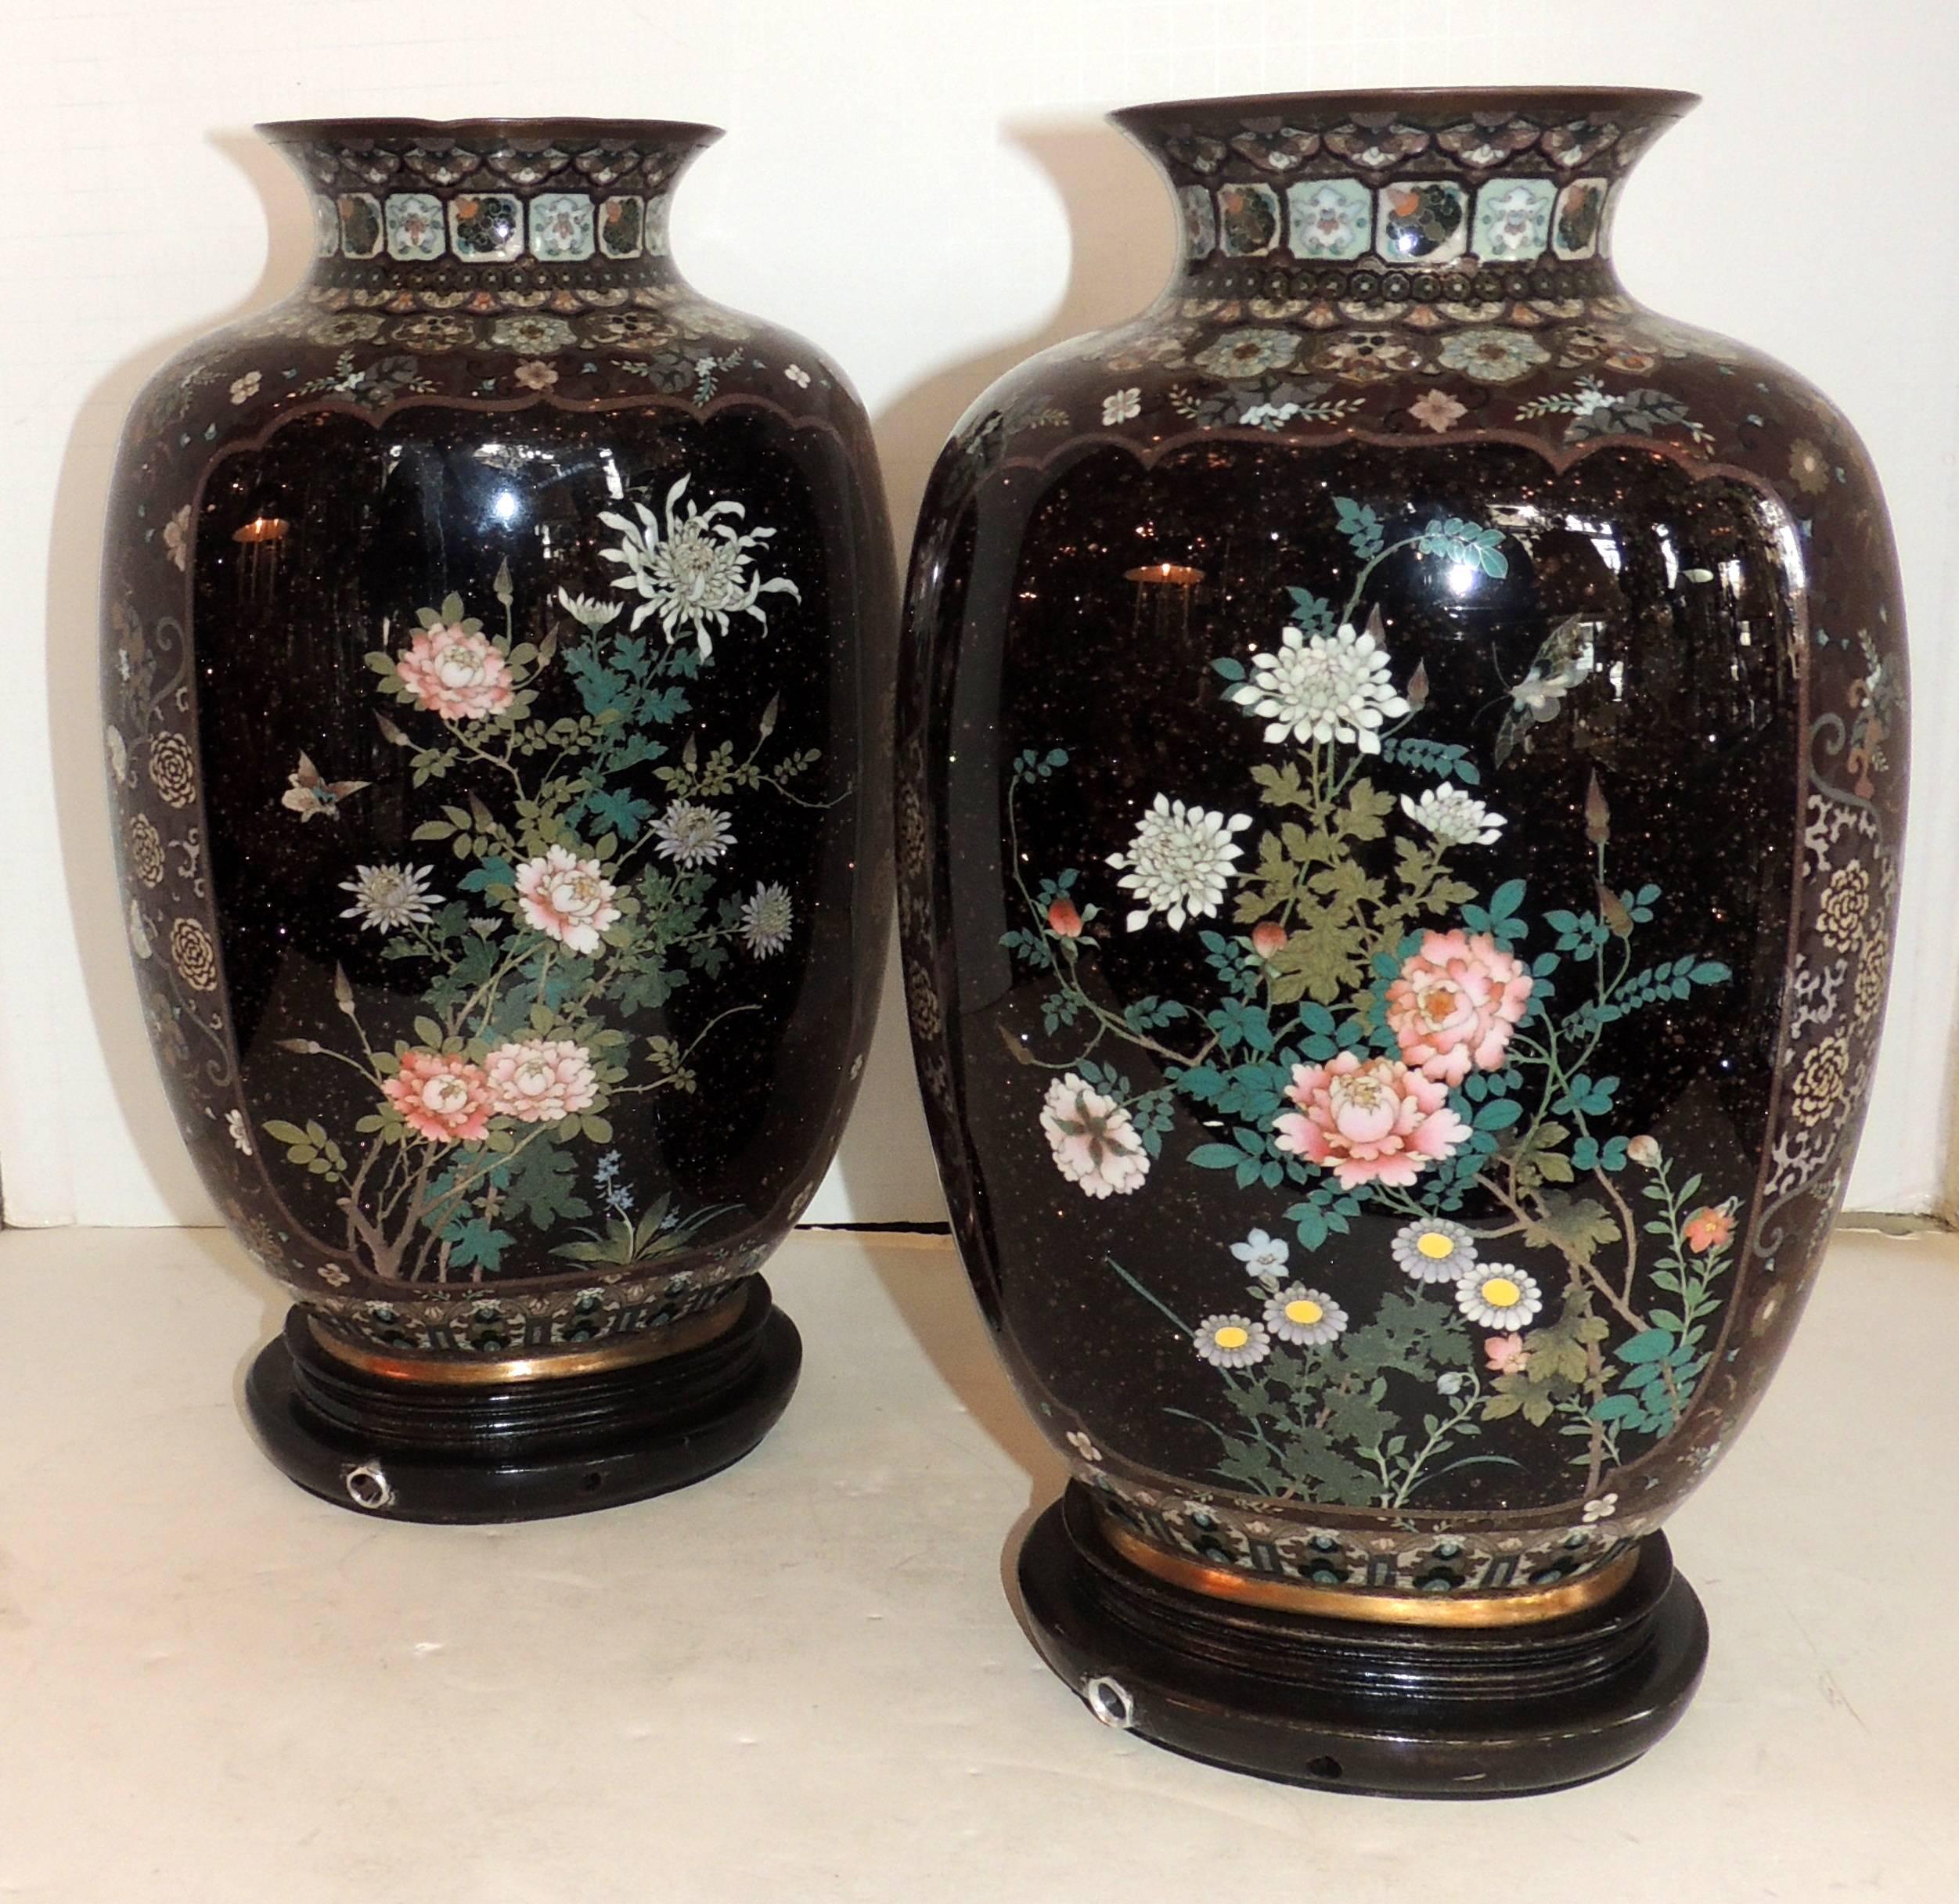 Japonisme Wonderful Pair of Fine Japanese Meiji Cloisonne Enameled Vases Urn Form Lamps